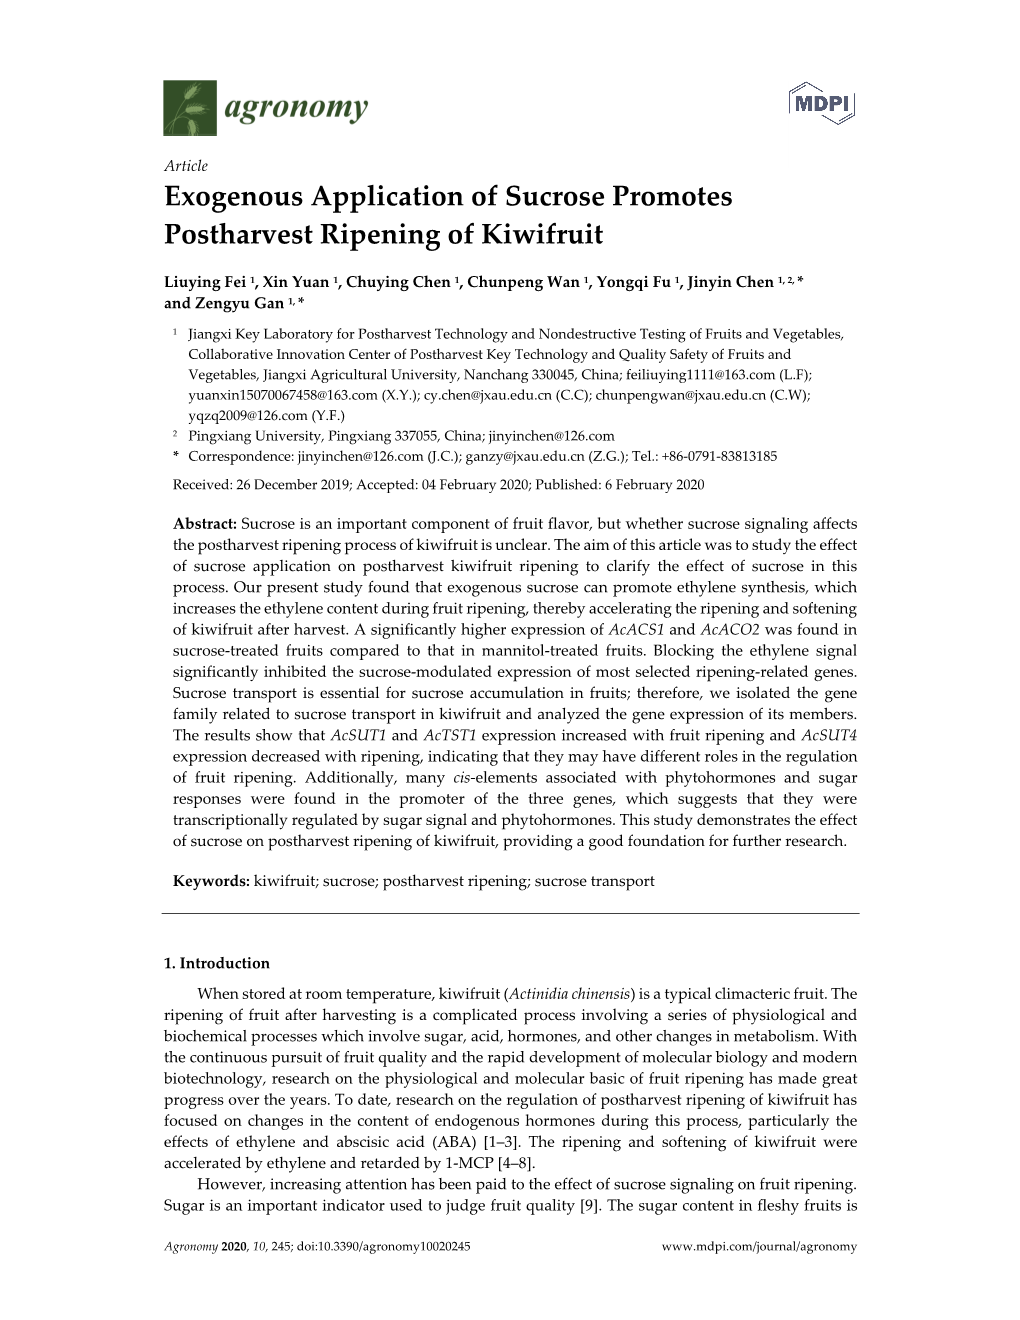 Exogenous Application of Sucrose Promotes Postharvest Ripening of Kiwifruit